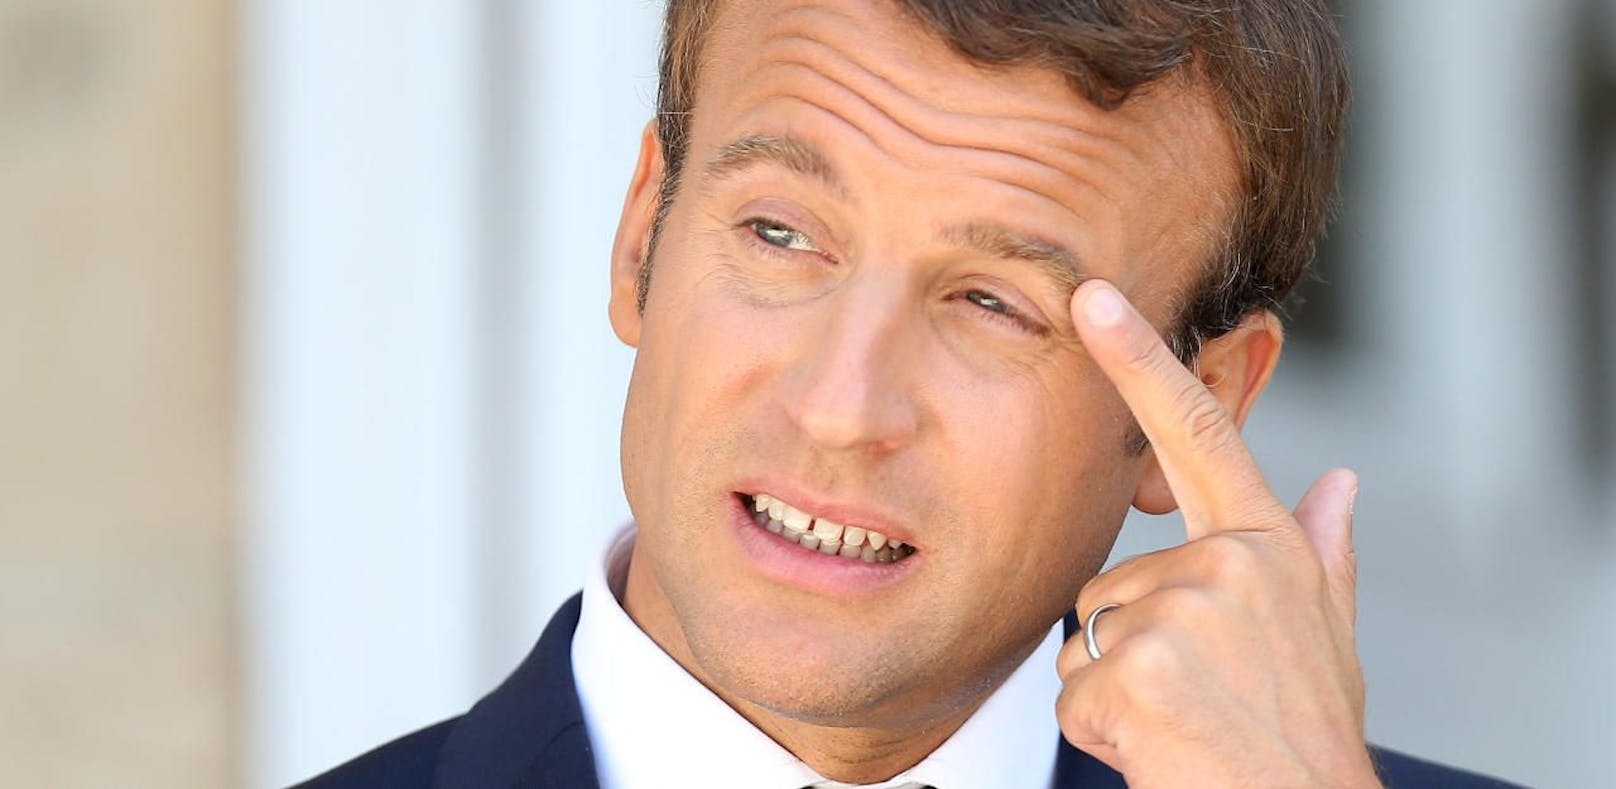 Frankreichs Präsident Emmanuel Macron gab in zwei Monaten 26.000 Euro für seine Visagistin aus.